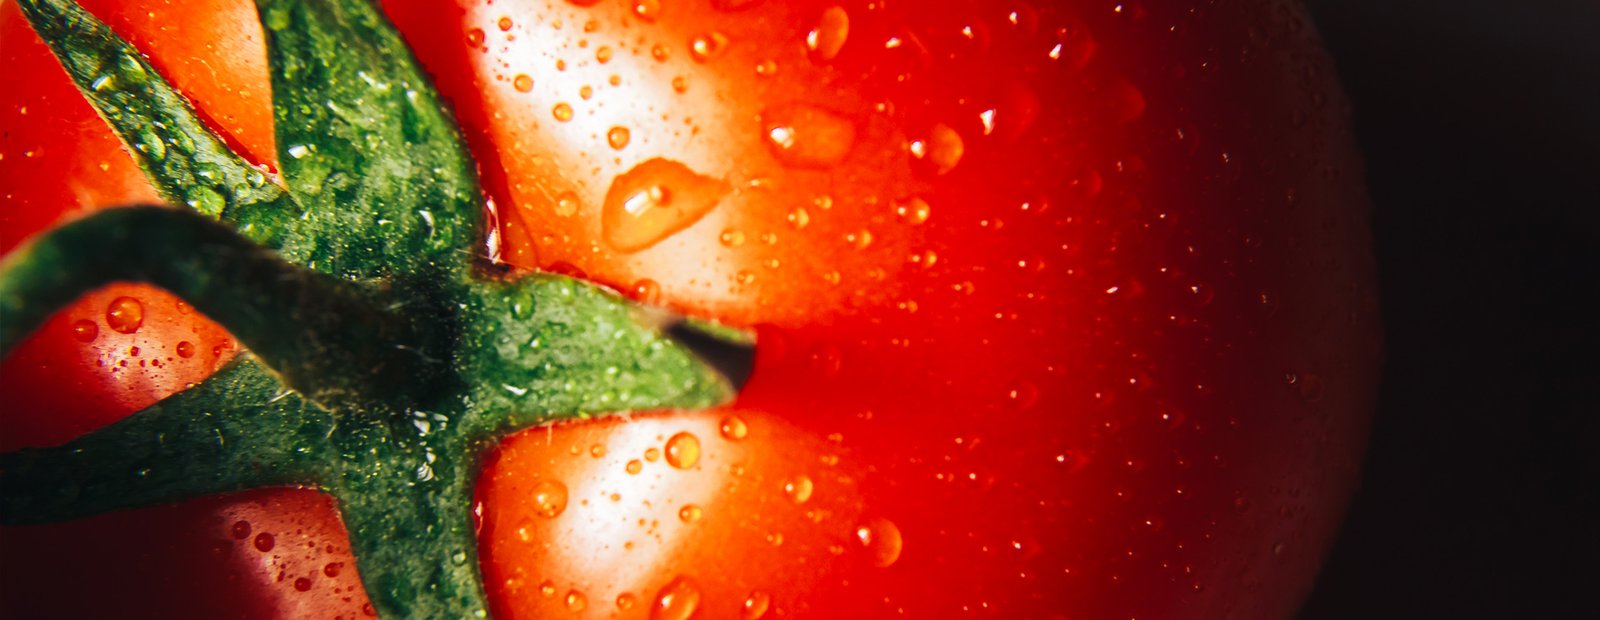 الطماطم في الثقافة العربية والإيطالية: الفروقات والنقاط المشتركة